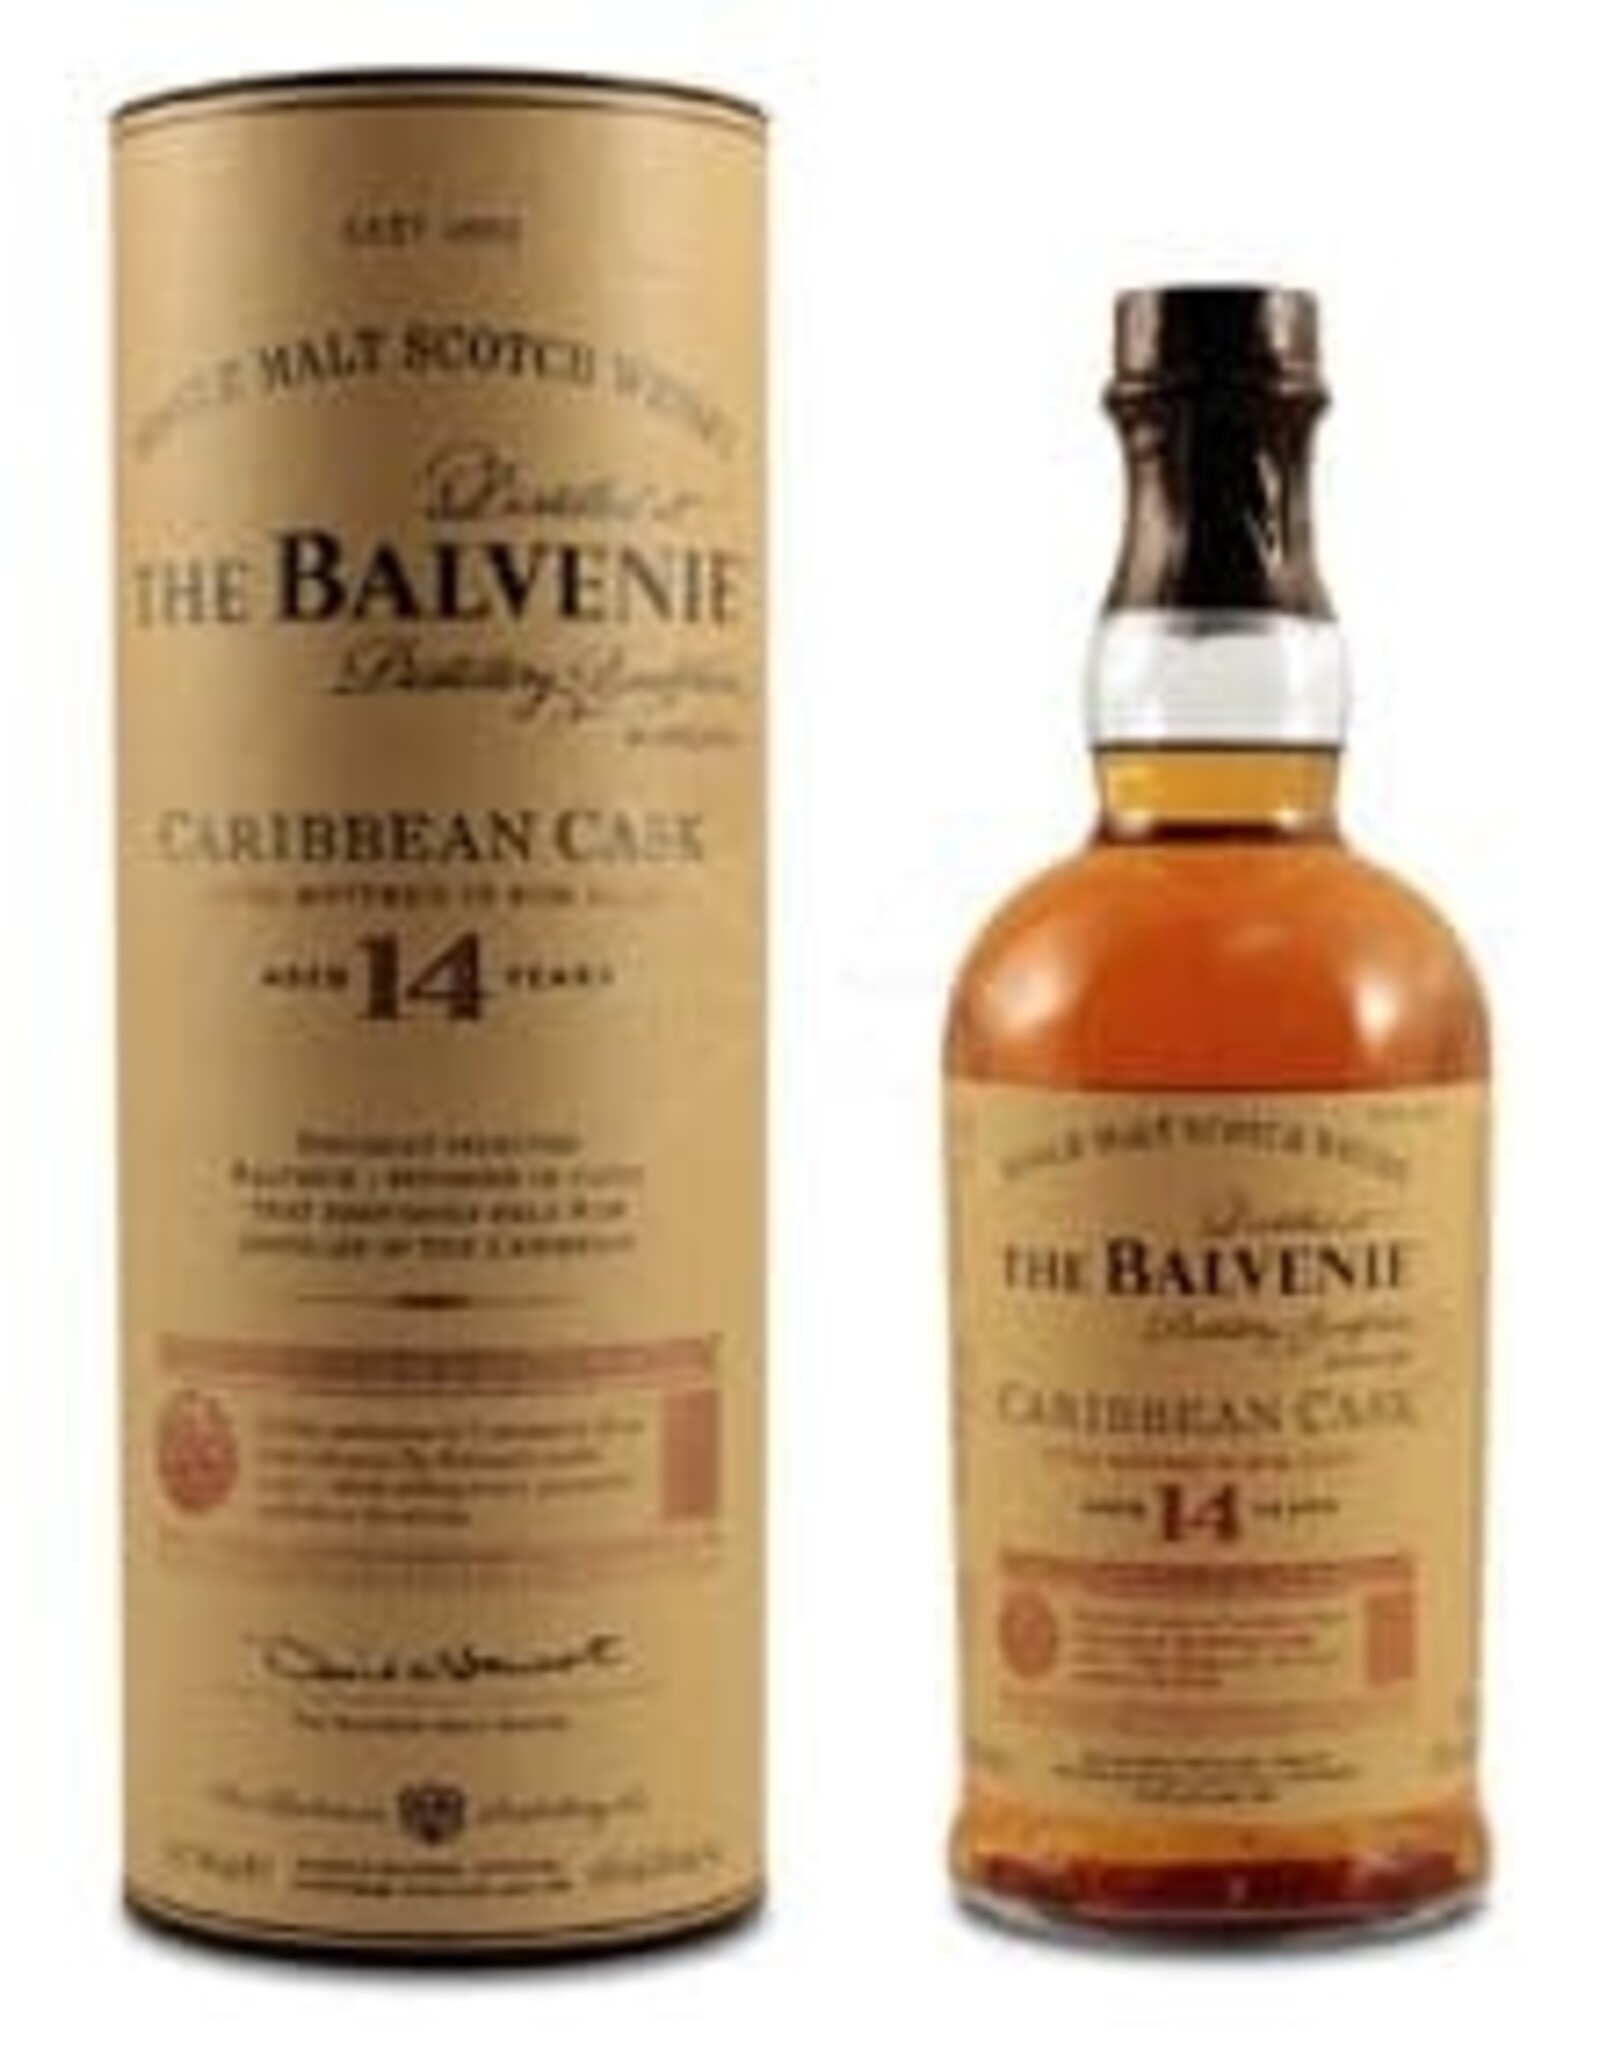 The Balvenie The Balvenie Caribbean Cask 14 Years 750 ml